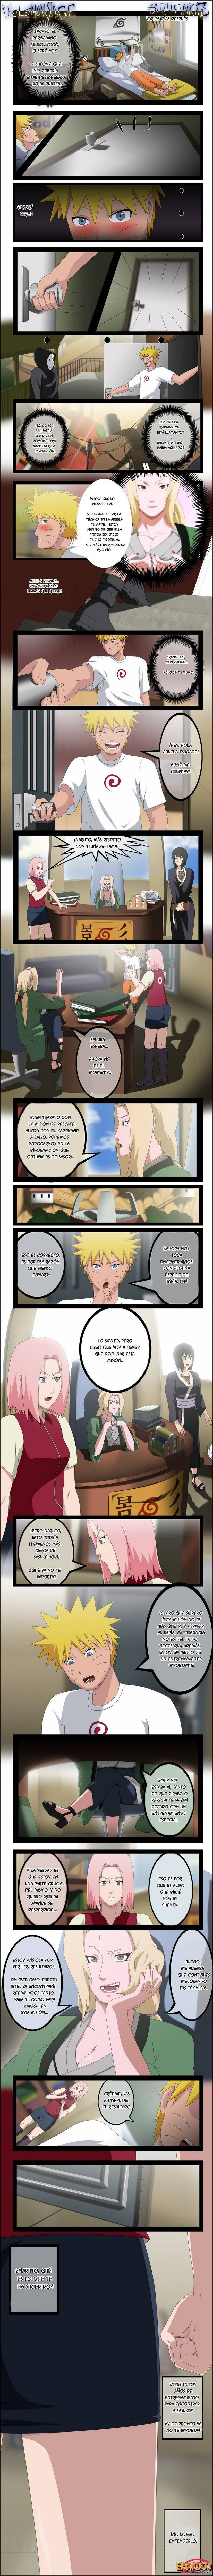 Eroninja #1 (Naruto Follando a Ino Yamanaka) - 6 - Comics Porno - Hentai Manga - Cartoon XXX